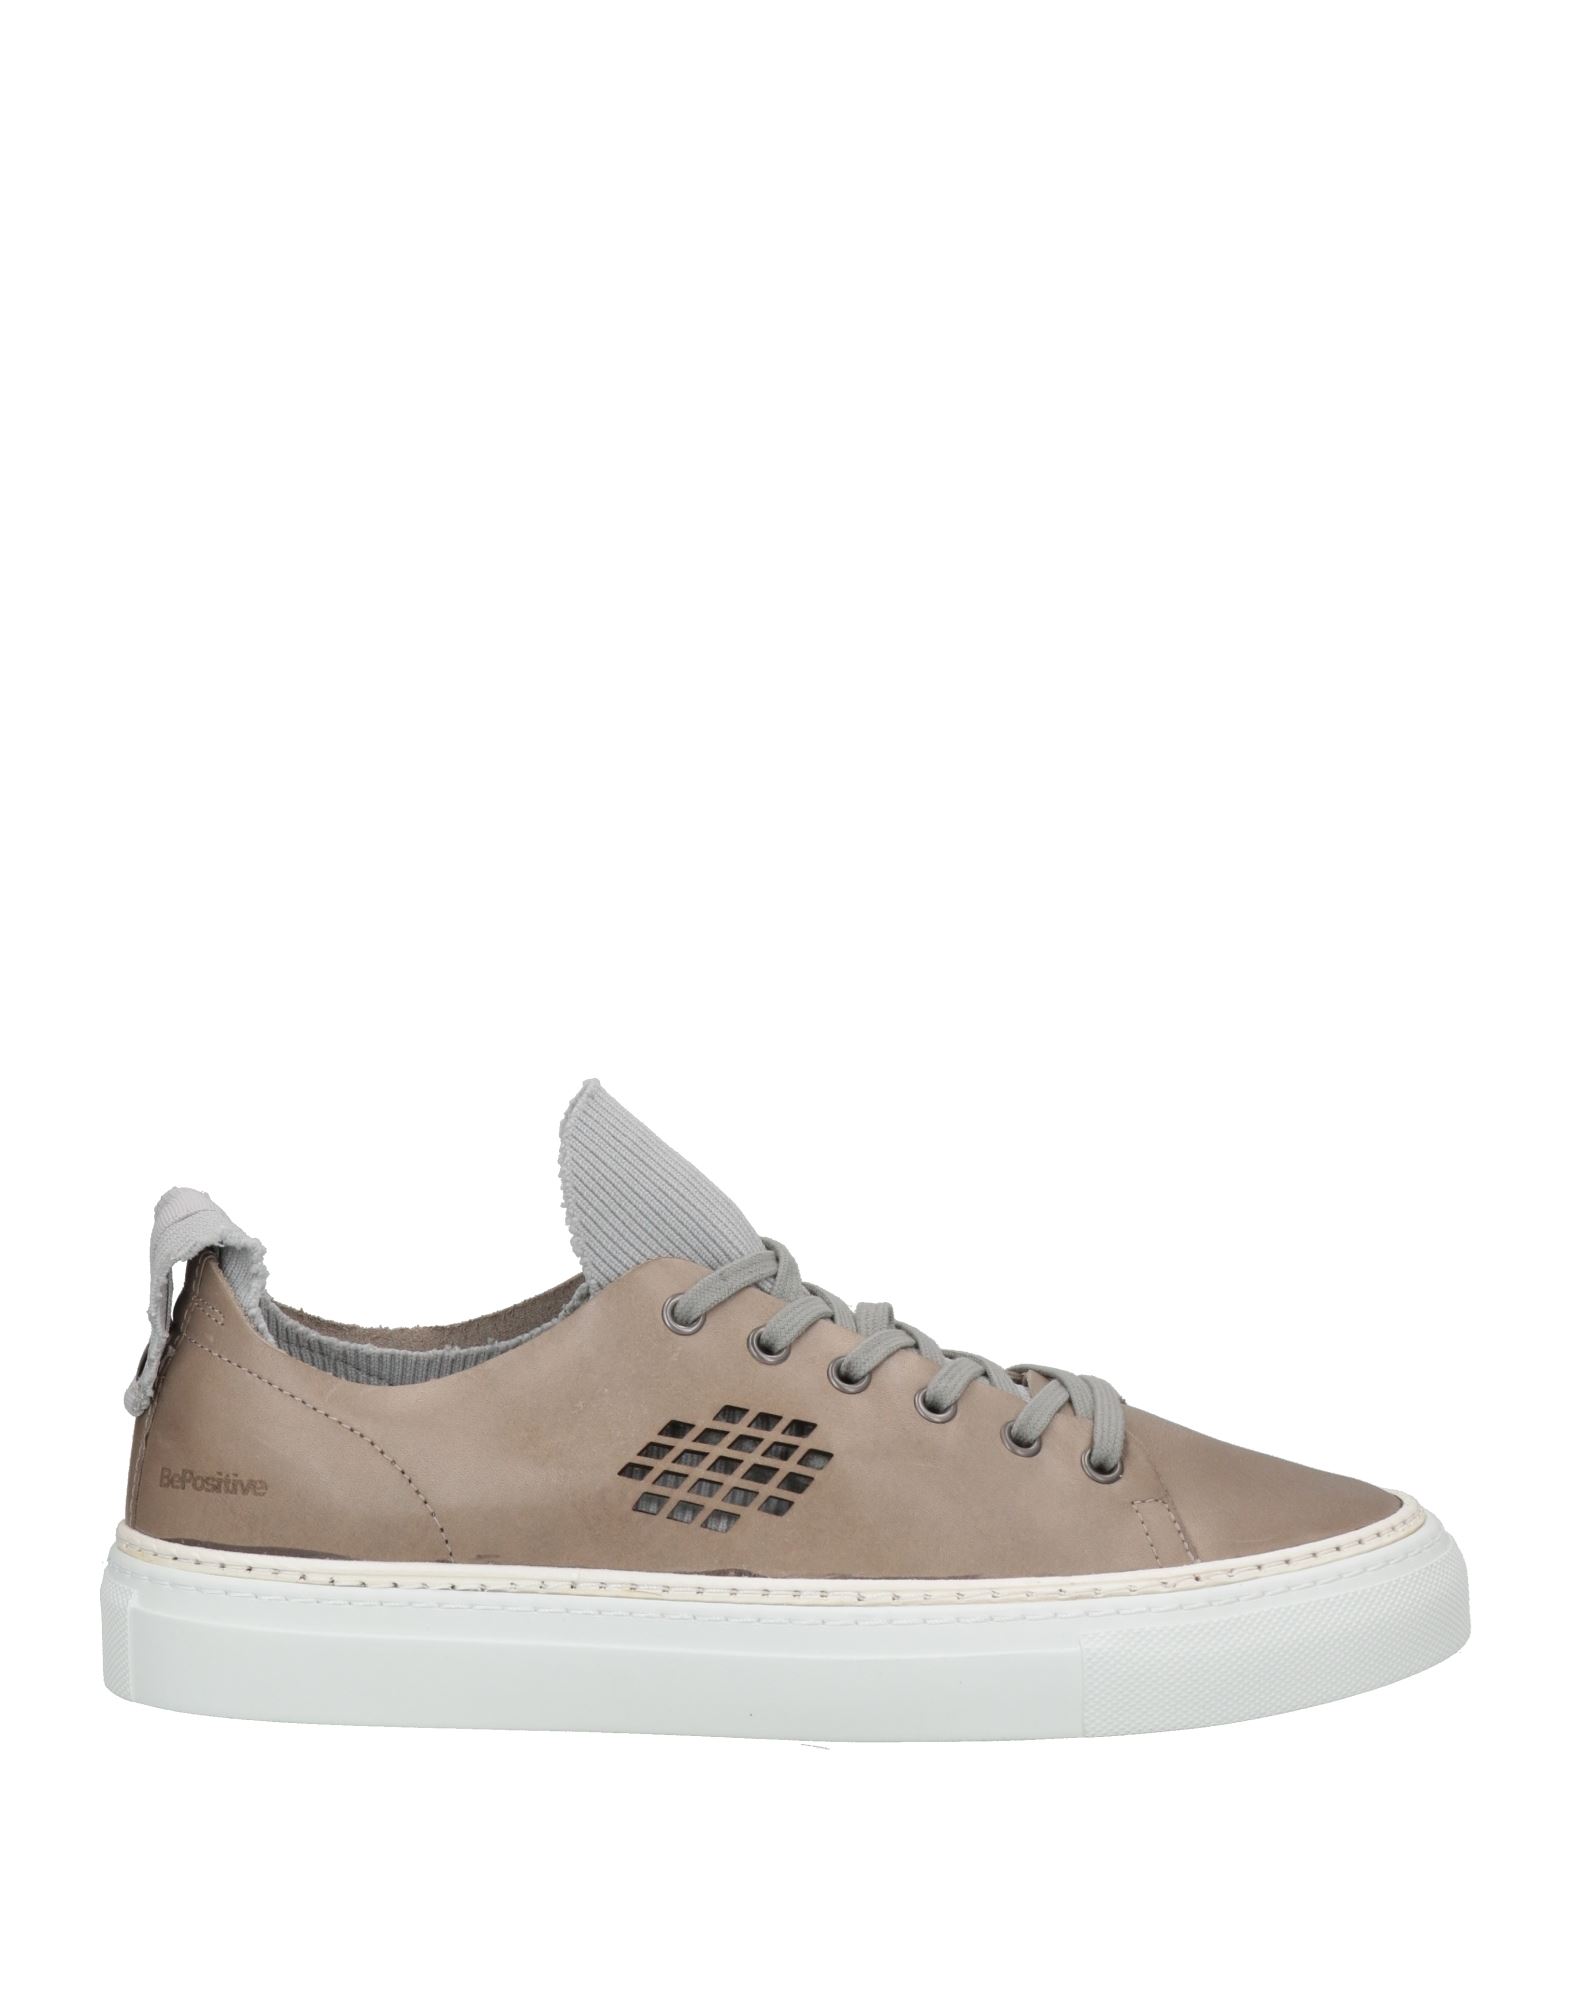 Bepositive Sneakers In Grey